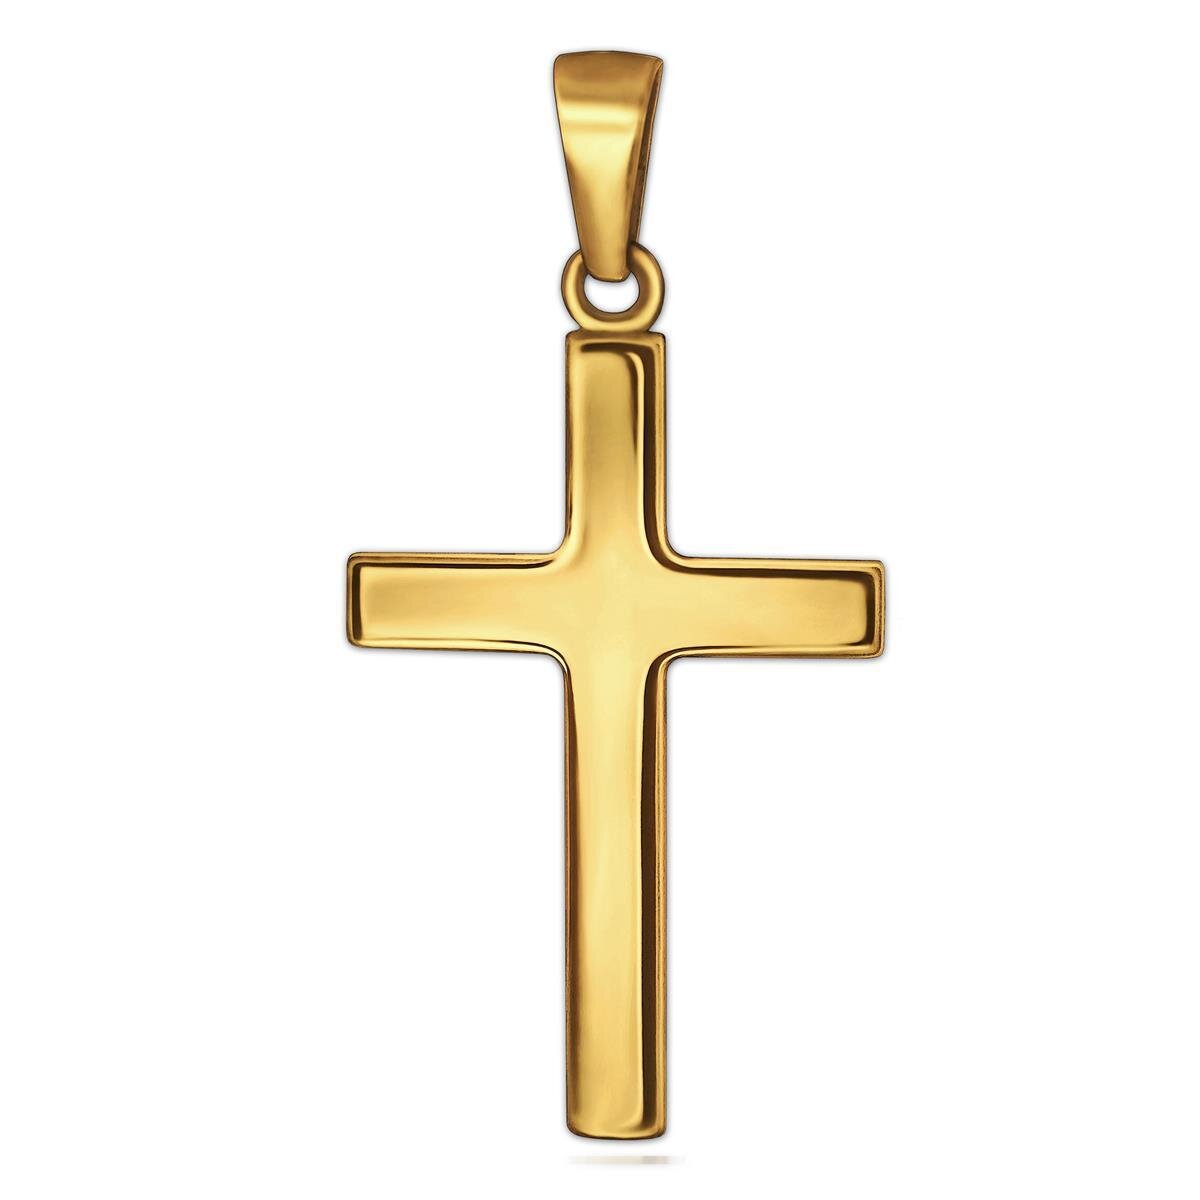 Goldener Kreuz Anhänger 24 mm groß schlicht glänzend poliert 333 Gold